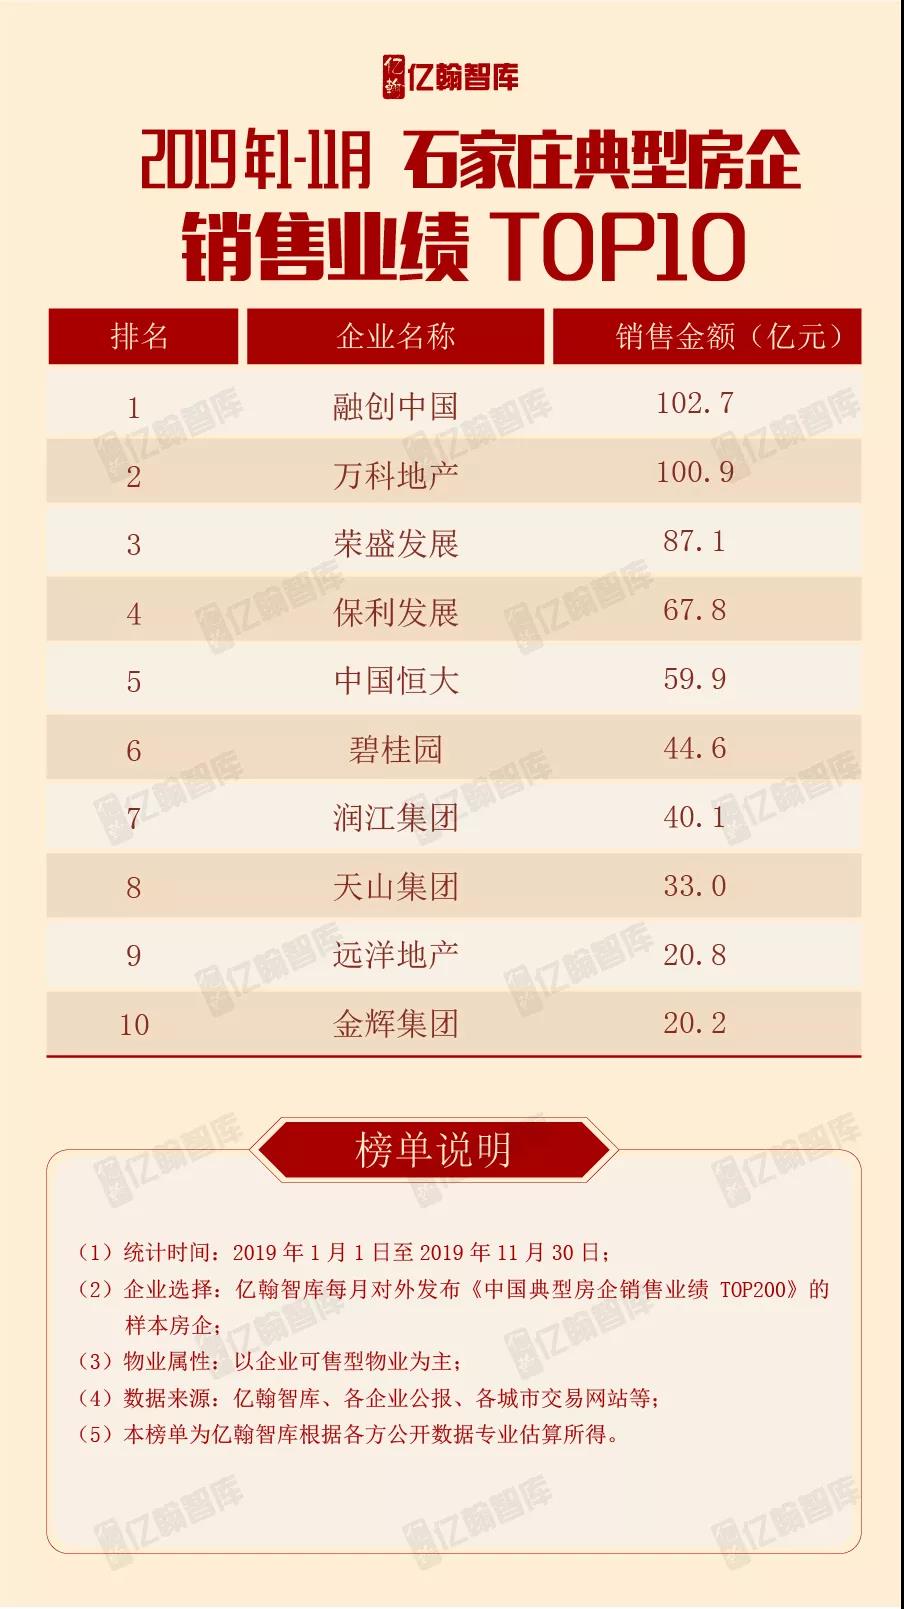 2019年1-11月石家庄典型房企 销售业绩TOP10-中国网地产